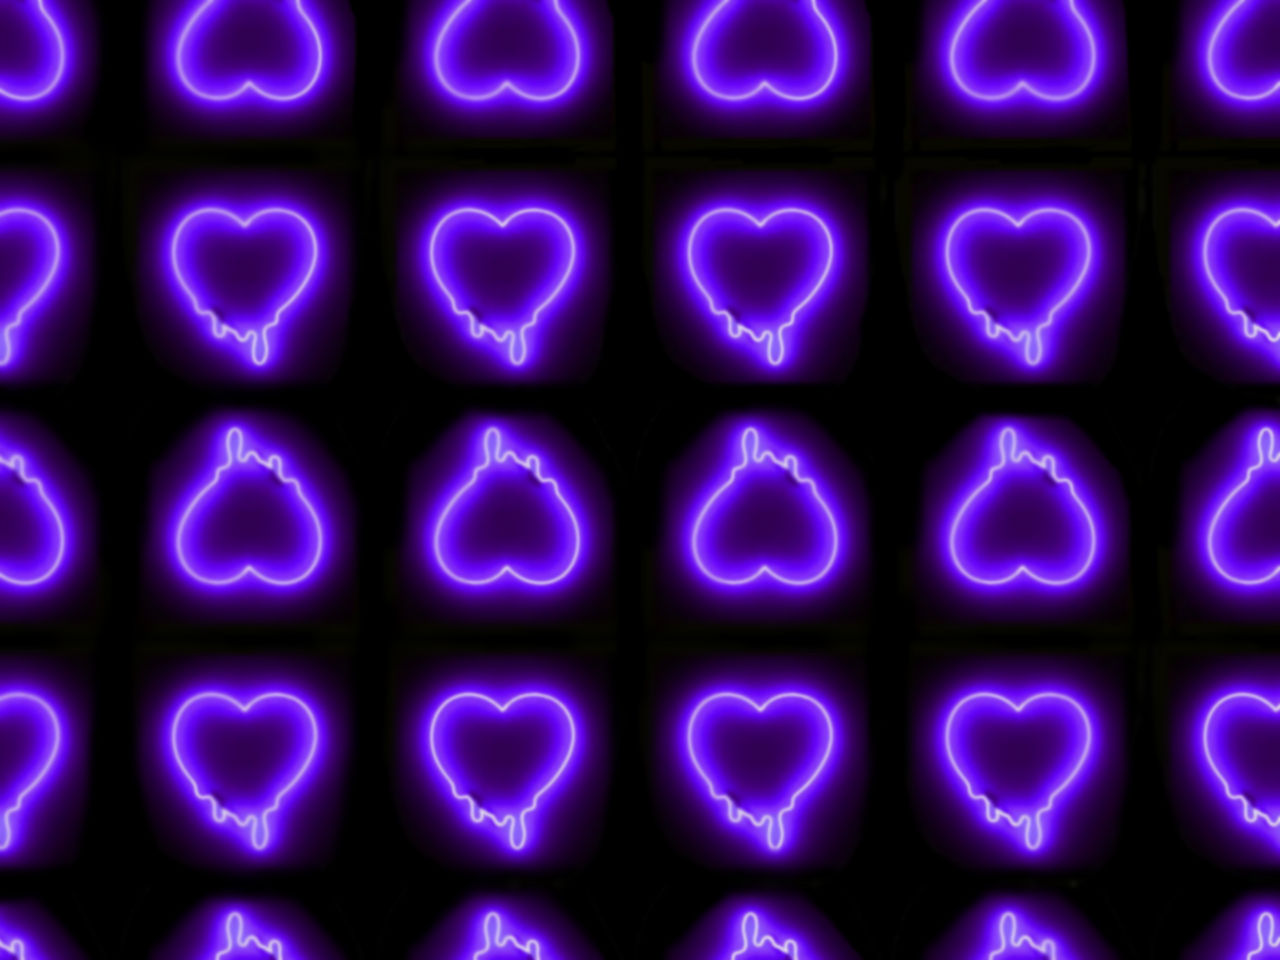 Hãy đắm chìm trong vô vàn màu tím huyền bí của hình nền Neon Purple Heart! Với sắc tím đậm pha lẫn ánh sáng nhấp nháy từ nền đen, chiếc trái tim sẽ khiến bạn say đắm và cảm thấy tinh thần sảng khoái.